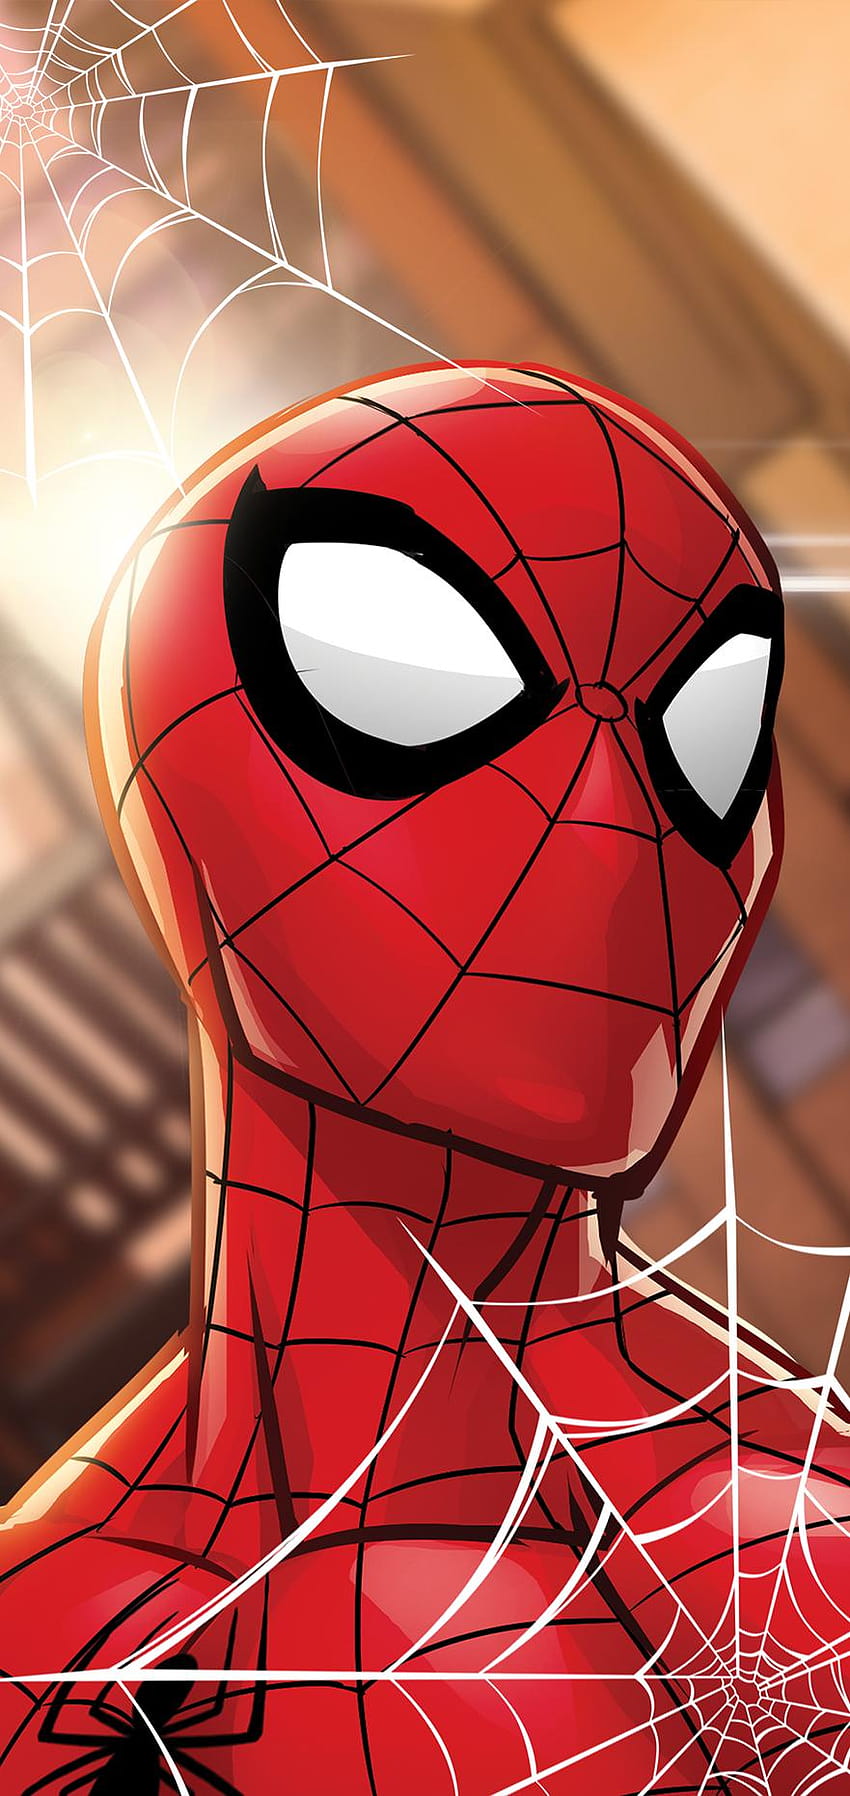 Galaxy Note 10 Casos de Marvel entrantes: Capitán América, Iron Man y más, super amoled spider man fondo de pantalla del teléfono